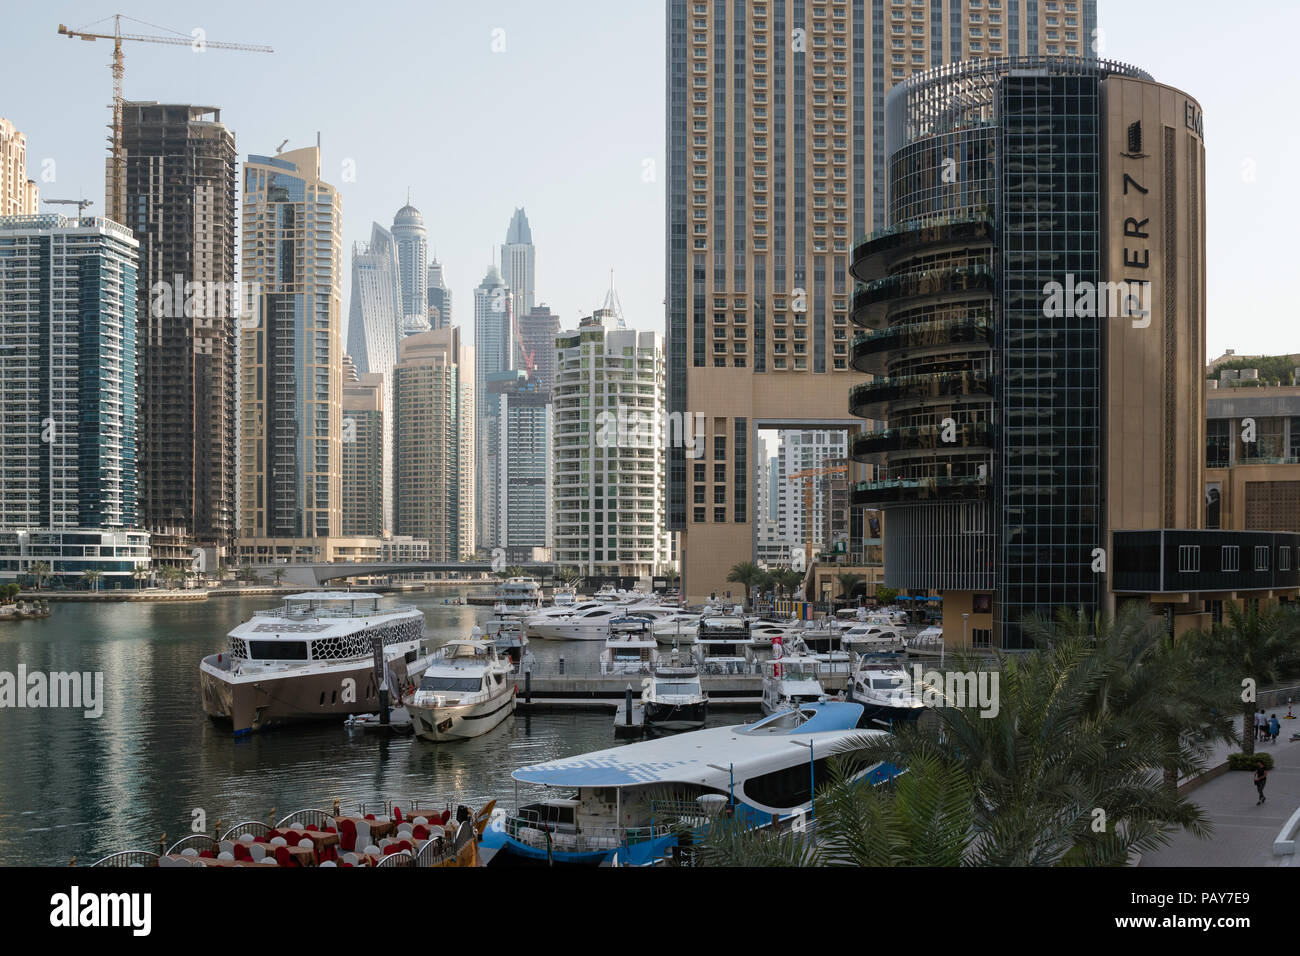 DUBAI, EMIRATOS ÁRABES UNIDOS - Febrero 14, 2018: la vista de los modernos rascacielos en la luz de la mañana en el puerto deportivo de Dubai, EAU Foto de stock